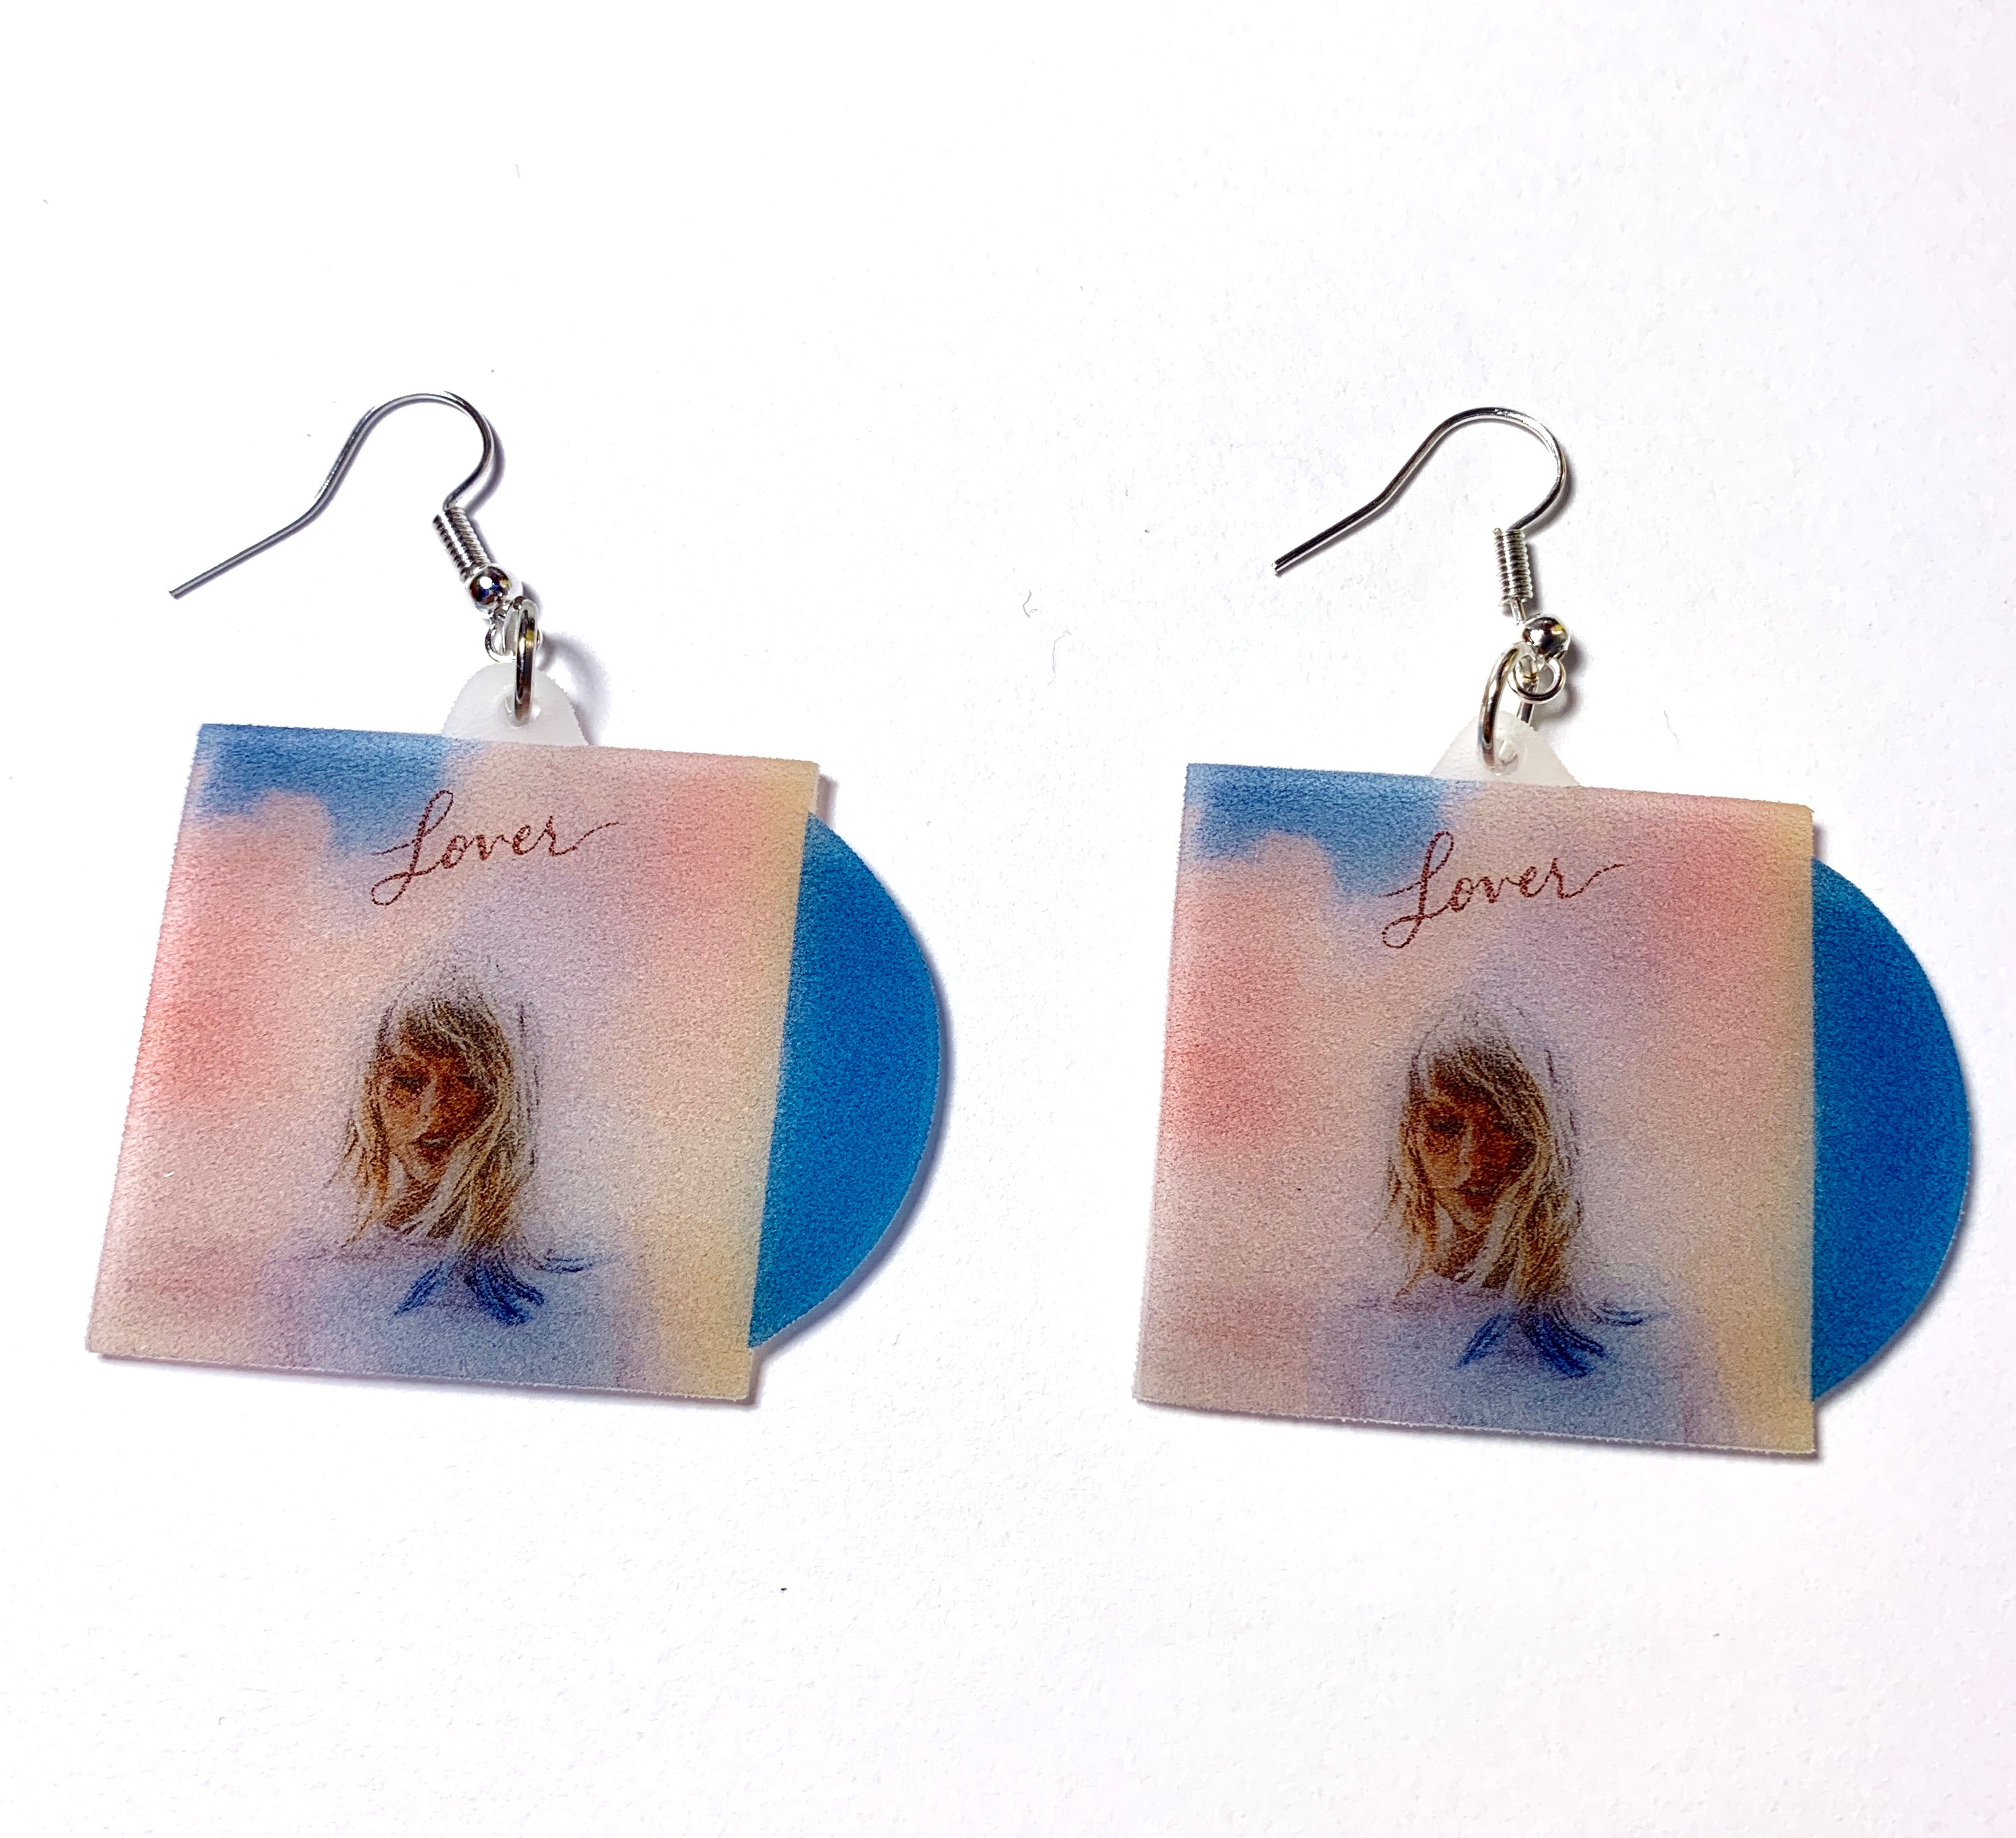 Taylor Swift Lover Vinyl Album Handmade Earrings! – Sam Makes Things